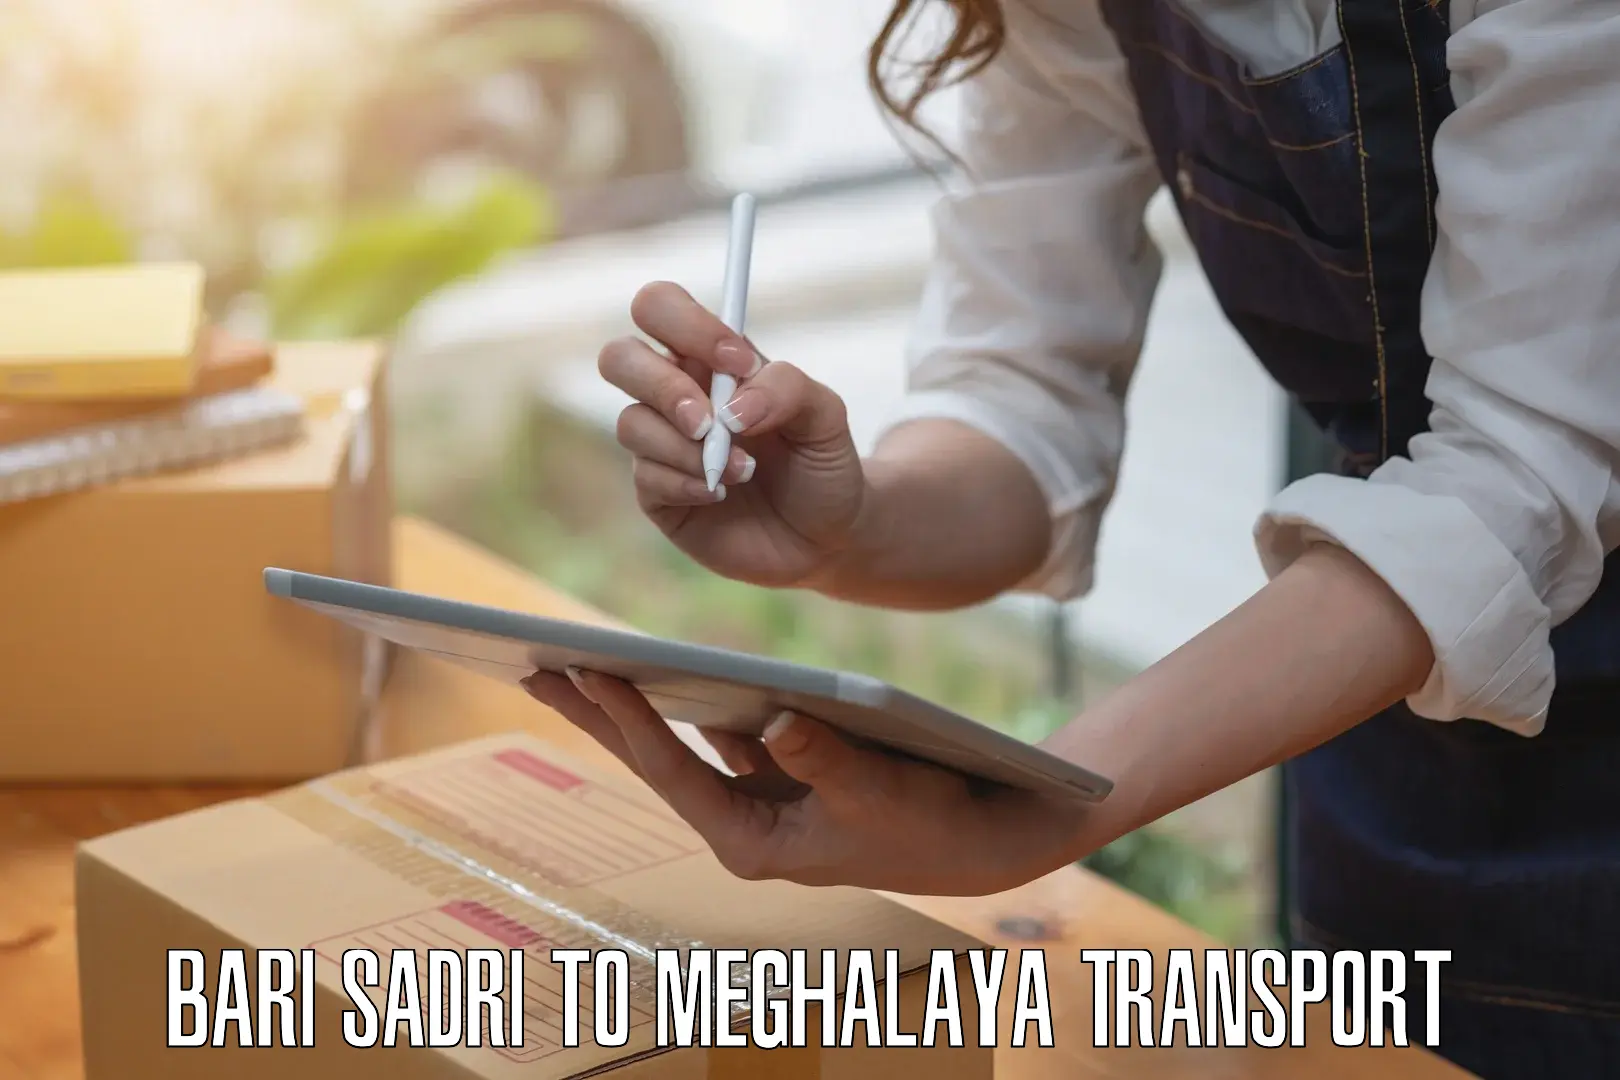 Road transport online services Bari Sadri to Meghalaya